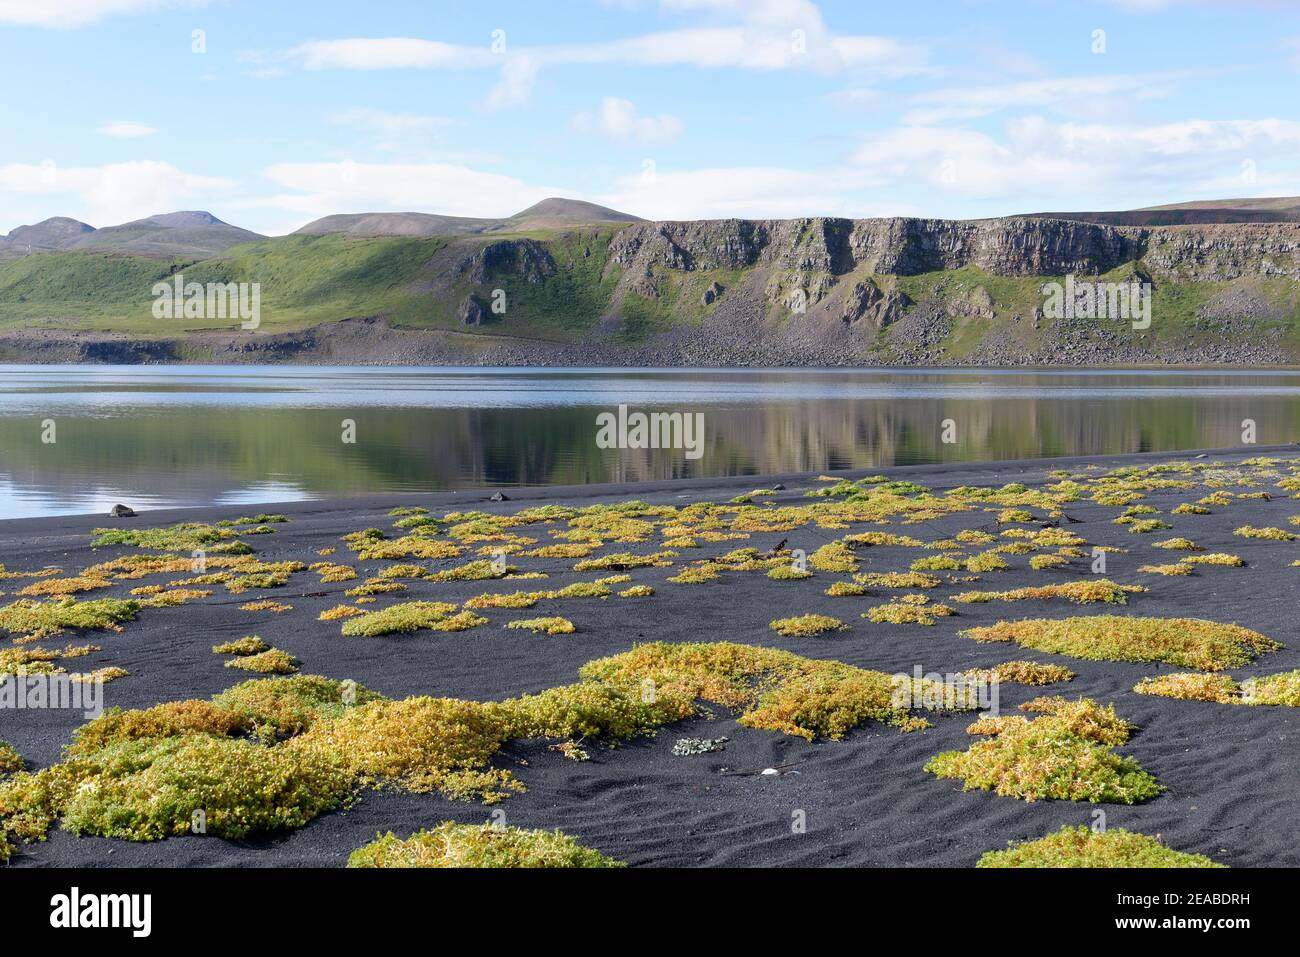 Plantas tolerantes a la sal (halyphytes) en la bahía cerca de Lonsón en el norte de Islandia Foto de stock